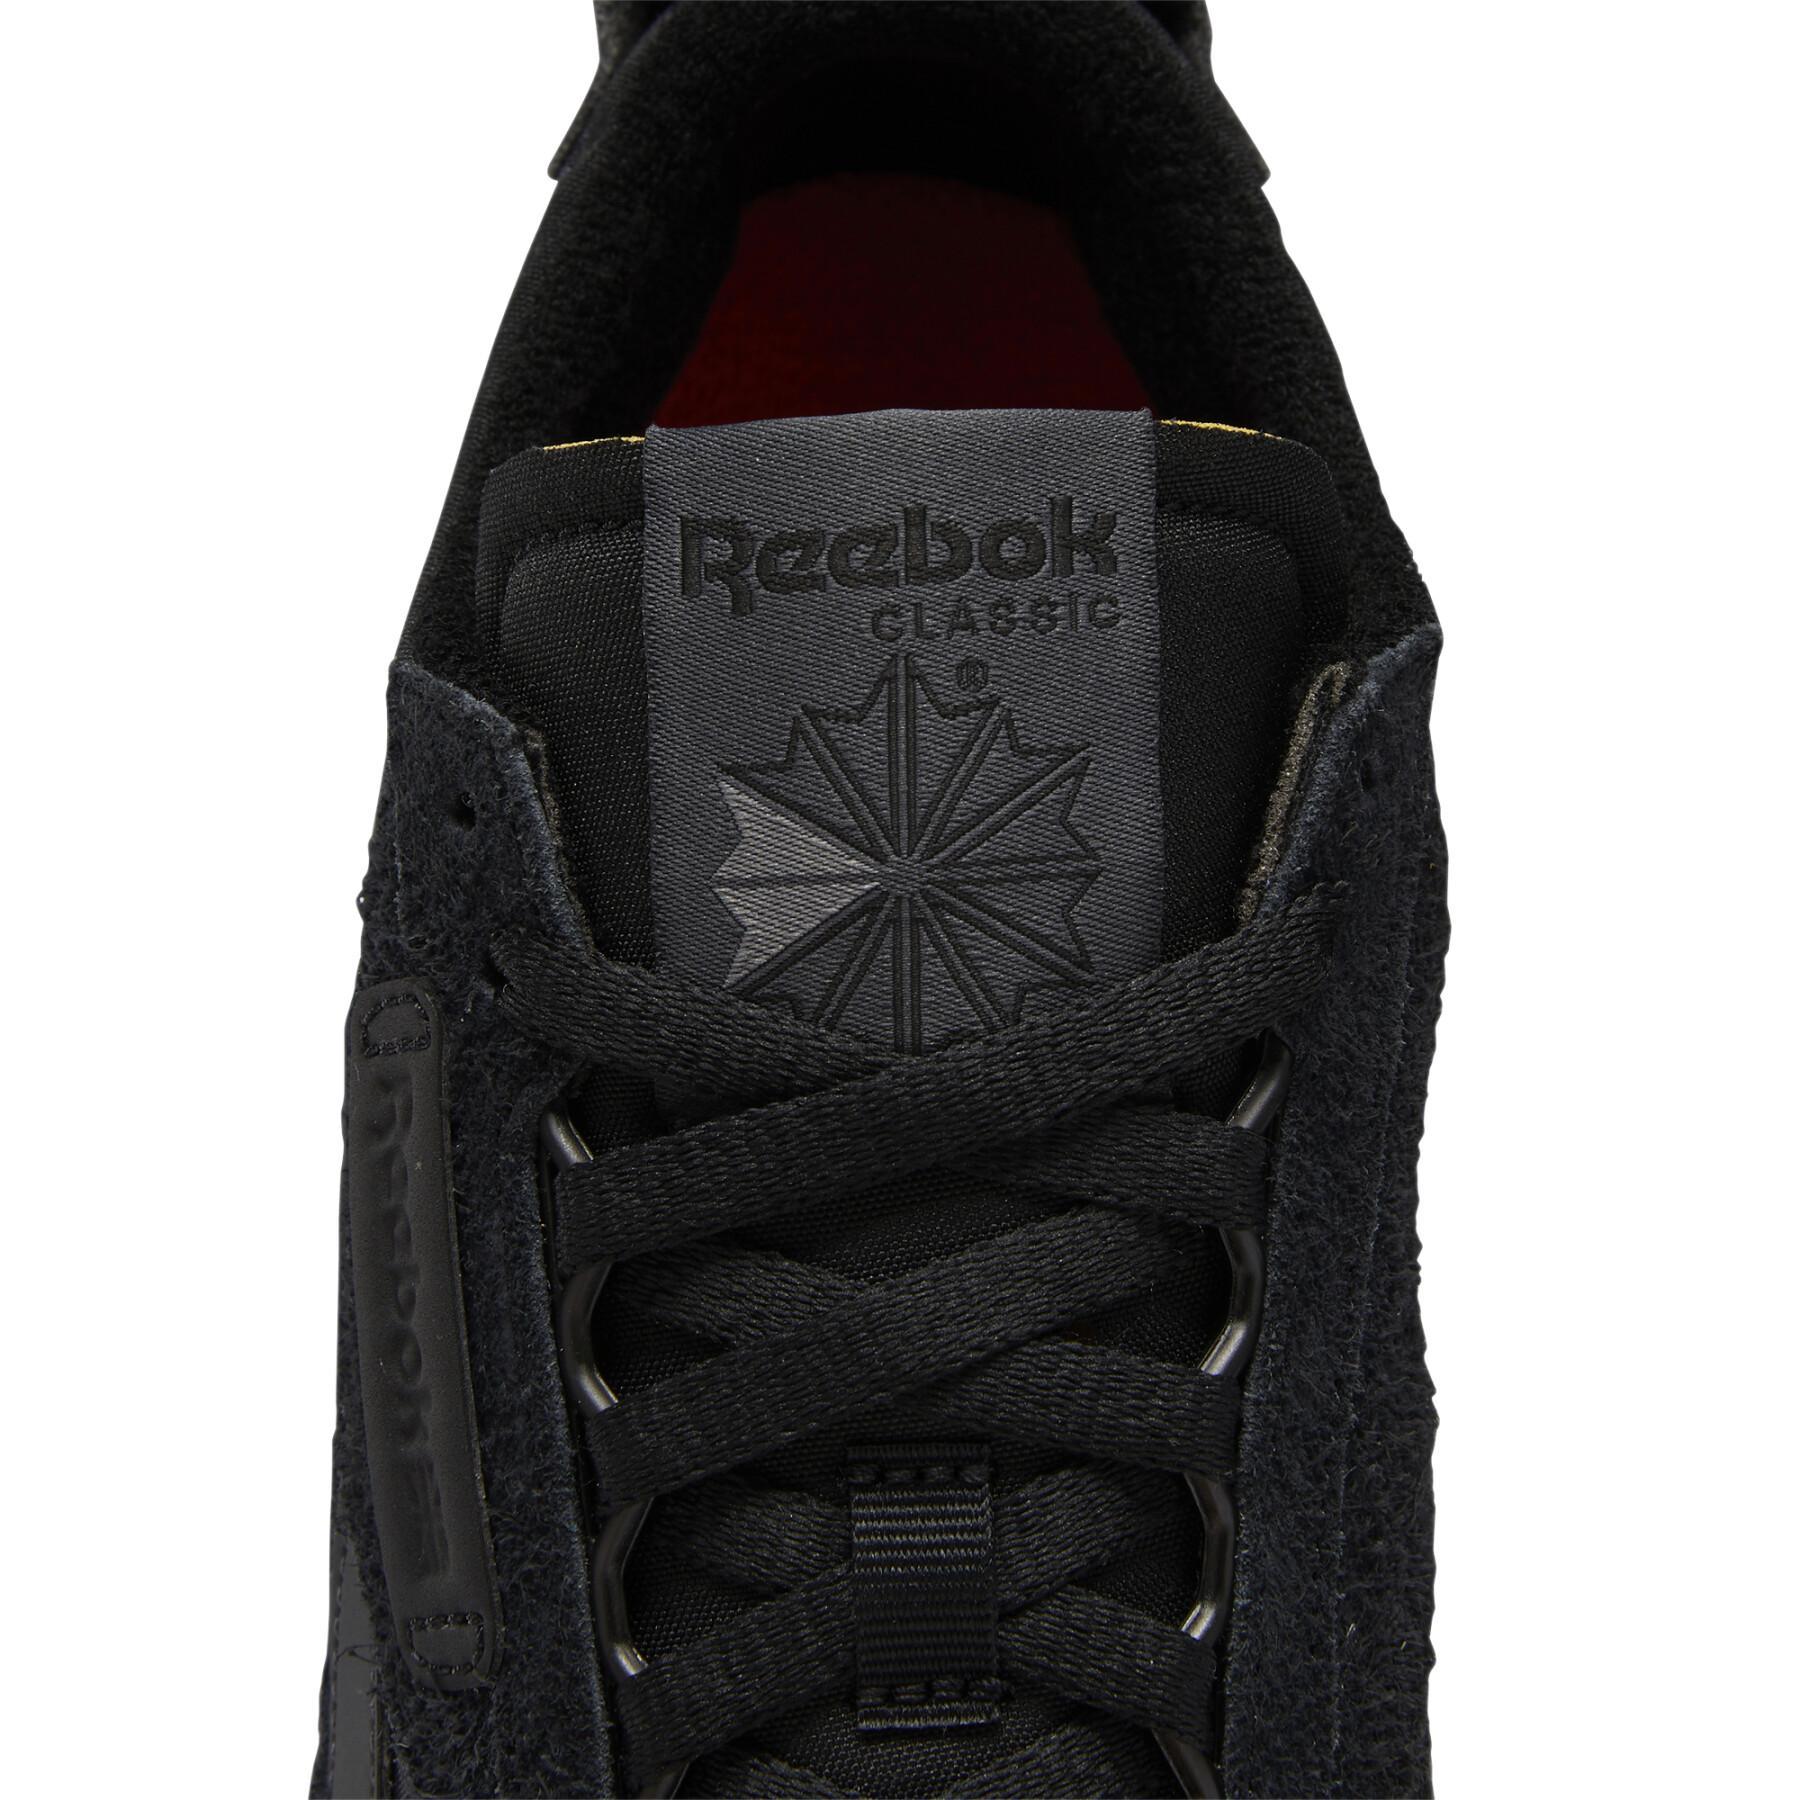 Zapatillas Reebok CL Legacy